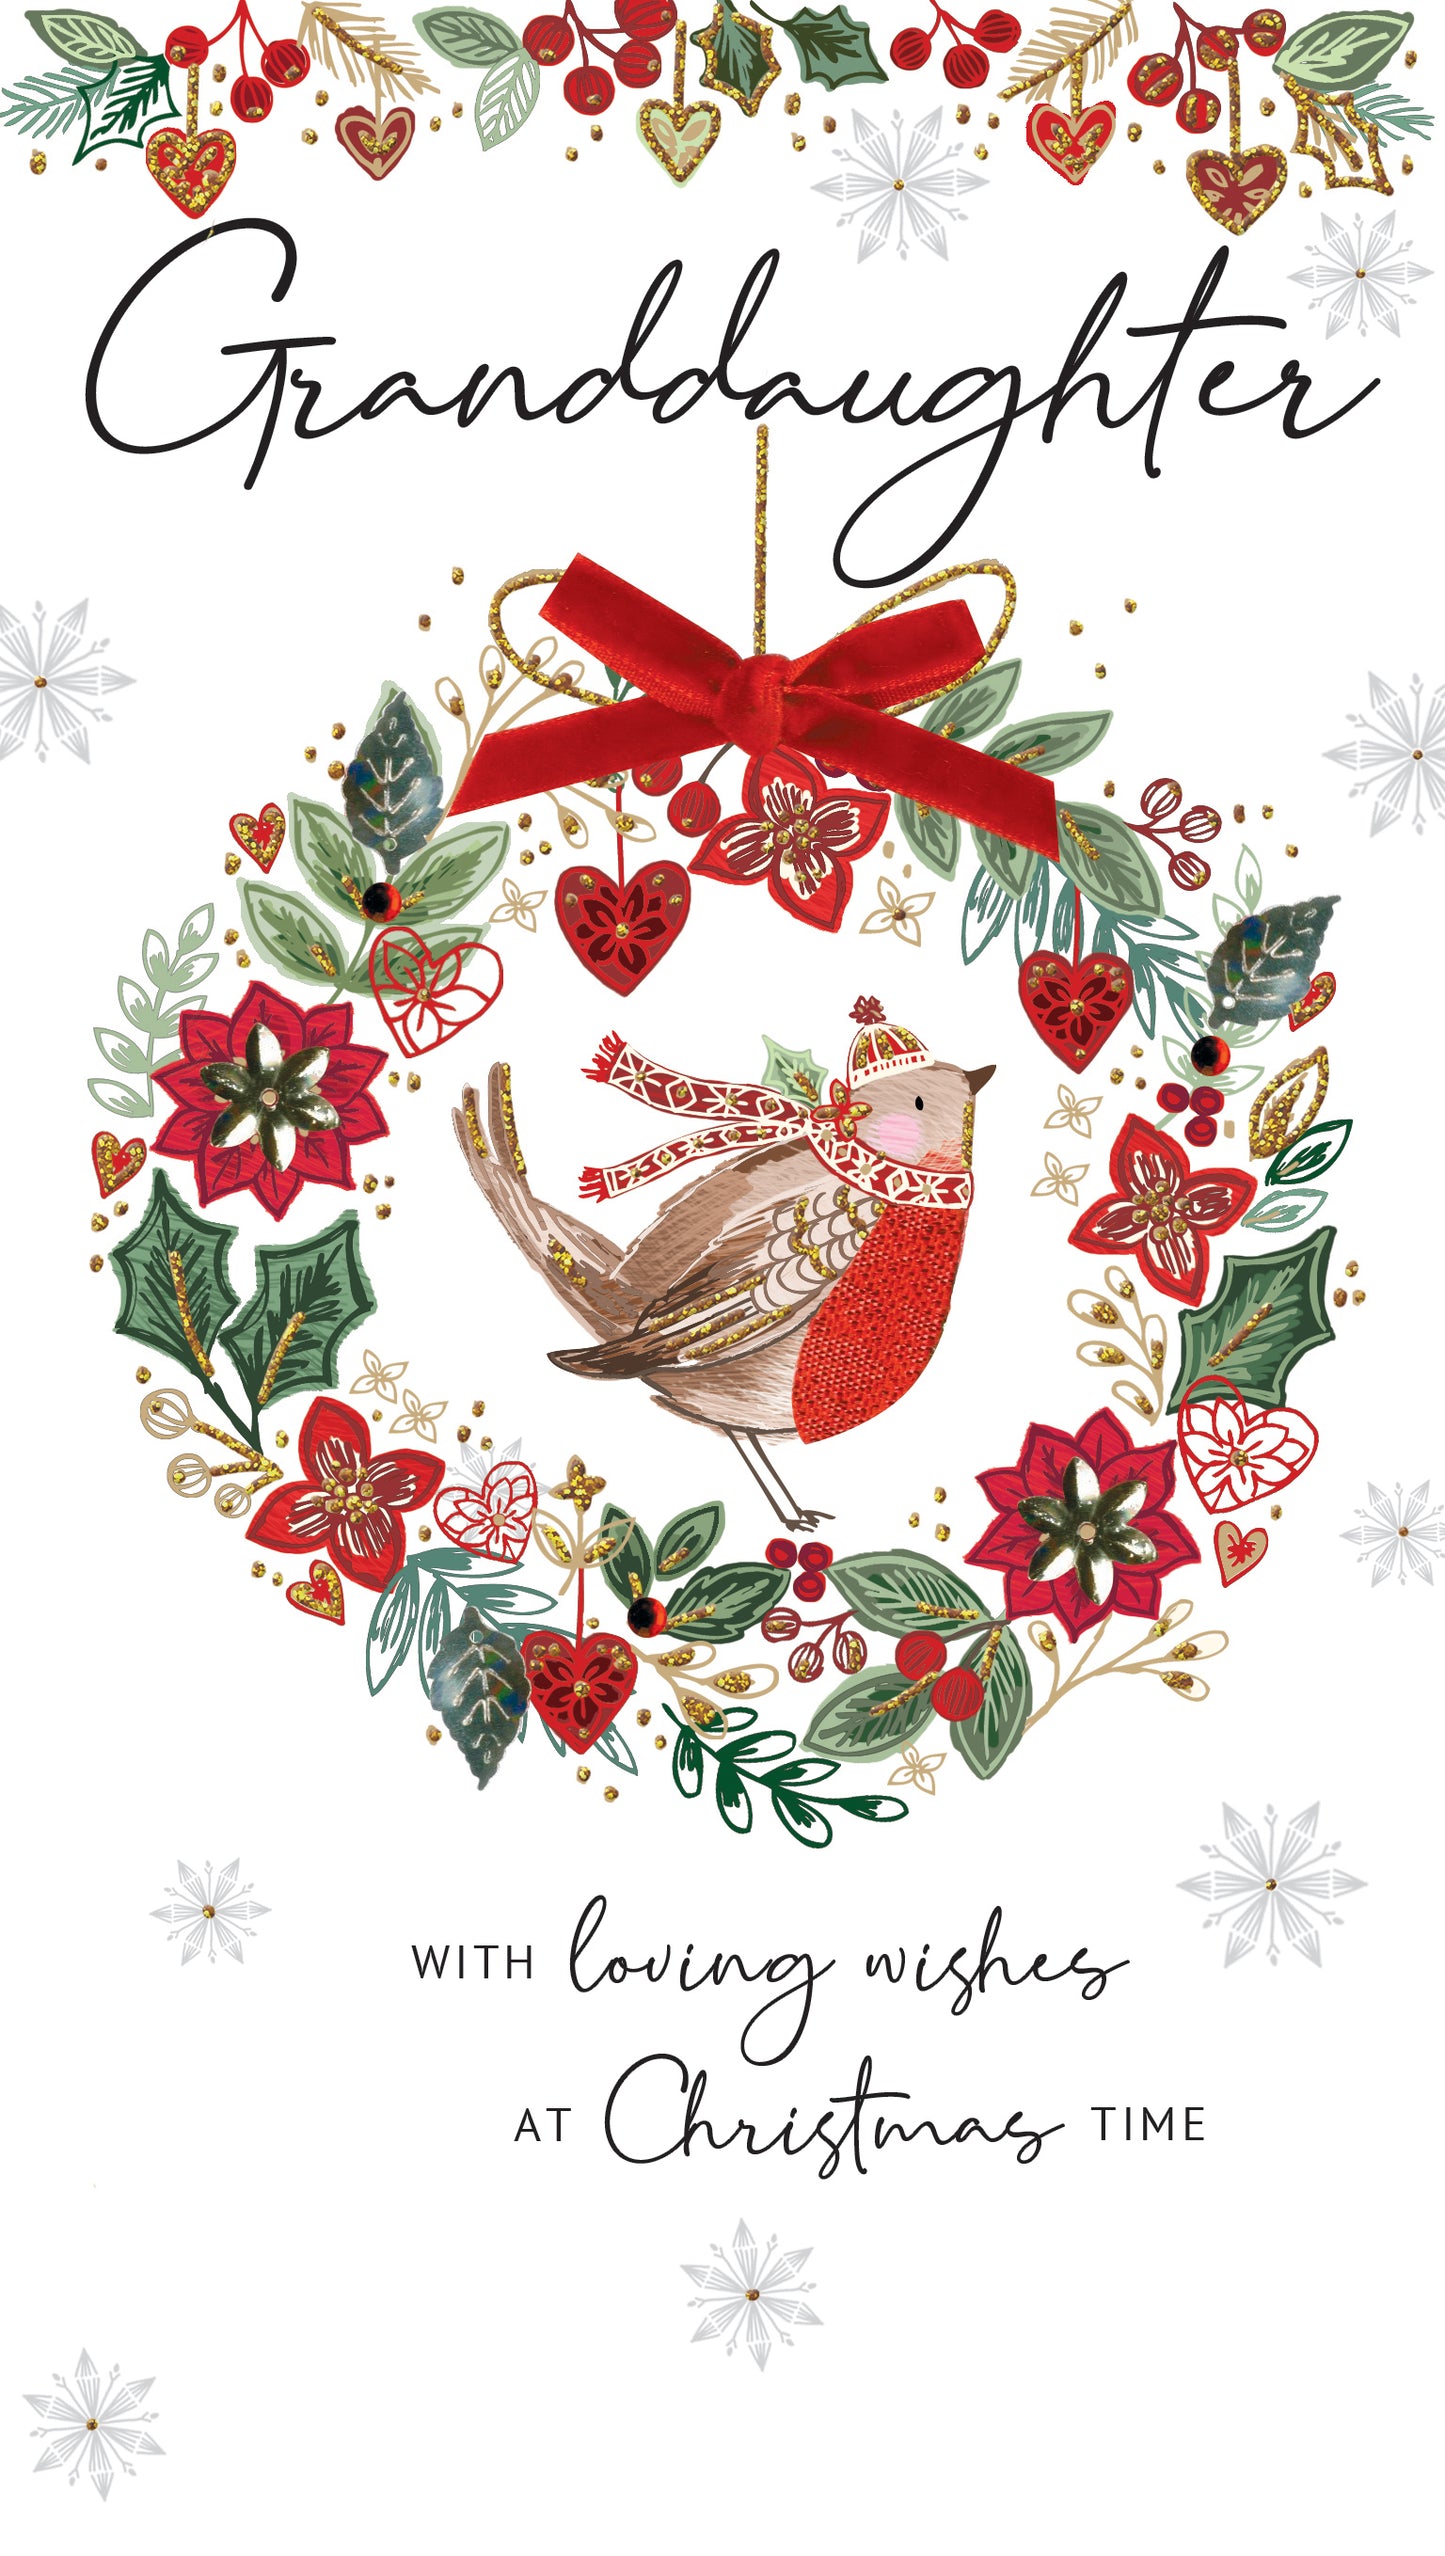 Granddaughter Embellished Christmas Card Hand-Finished